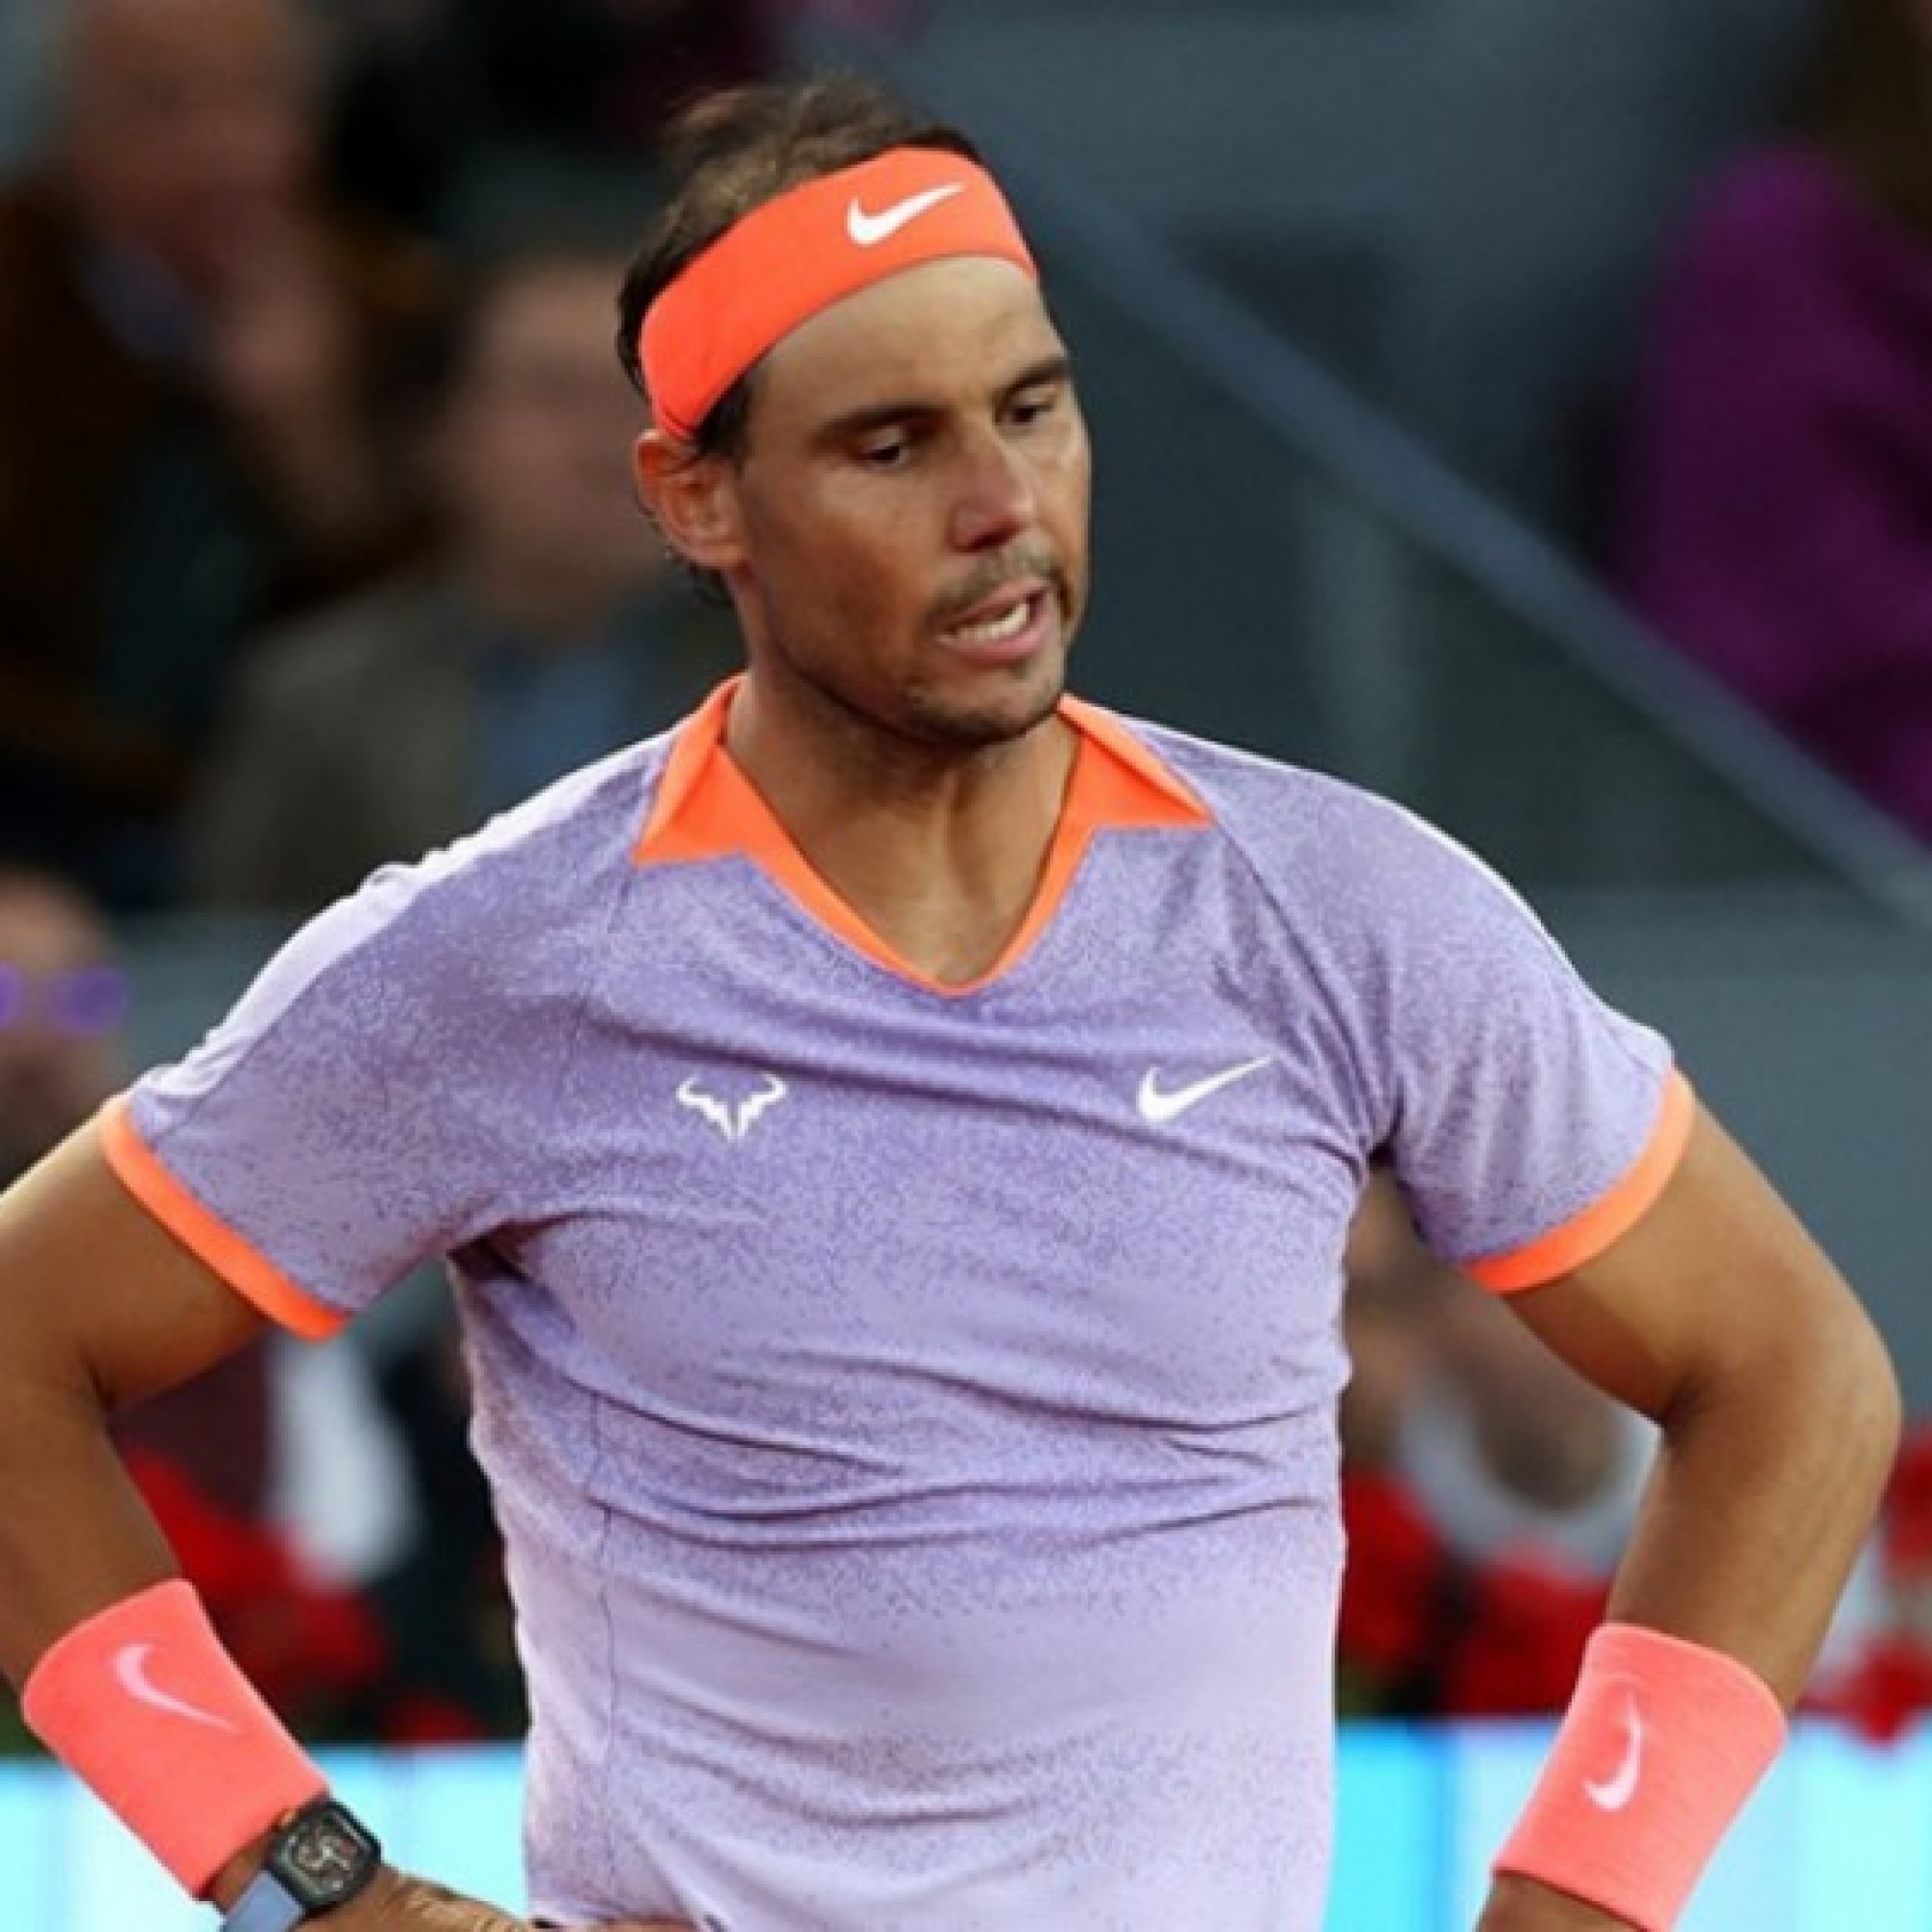  - Nóng nhất thể thao sáng 8/5: Nadal bị tố nói dối